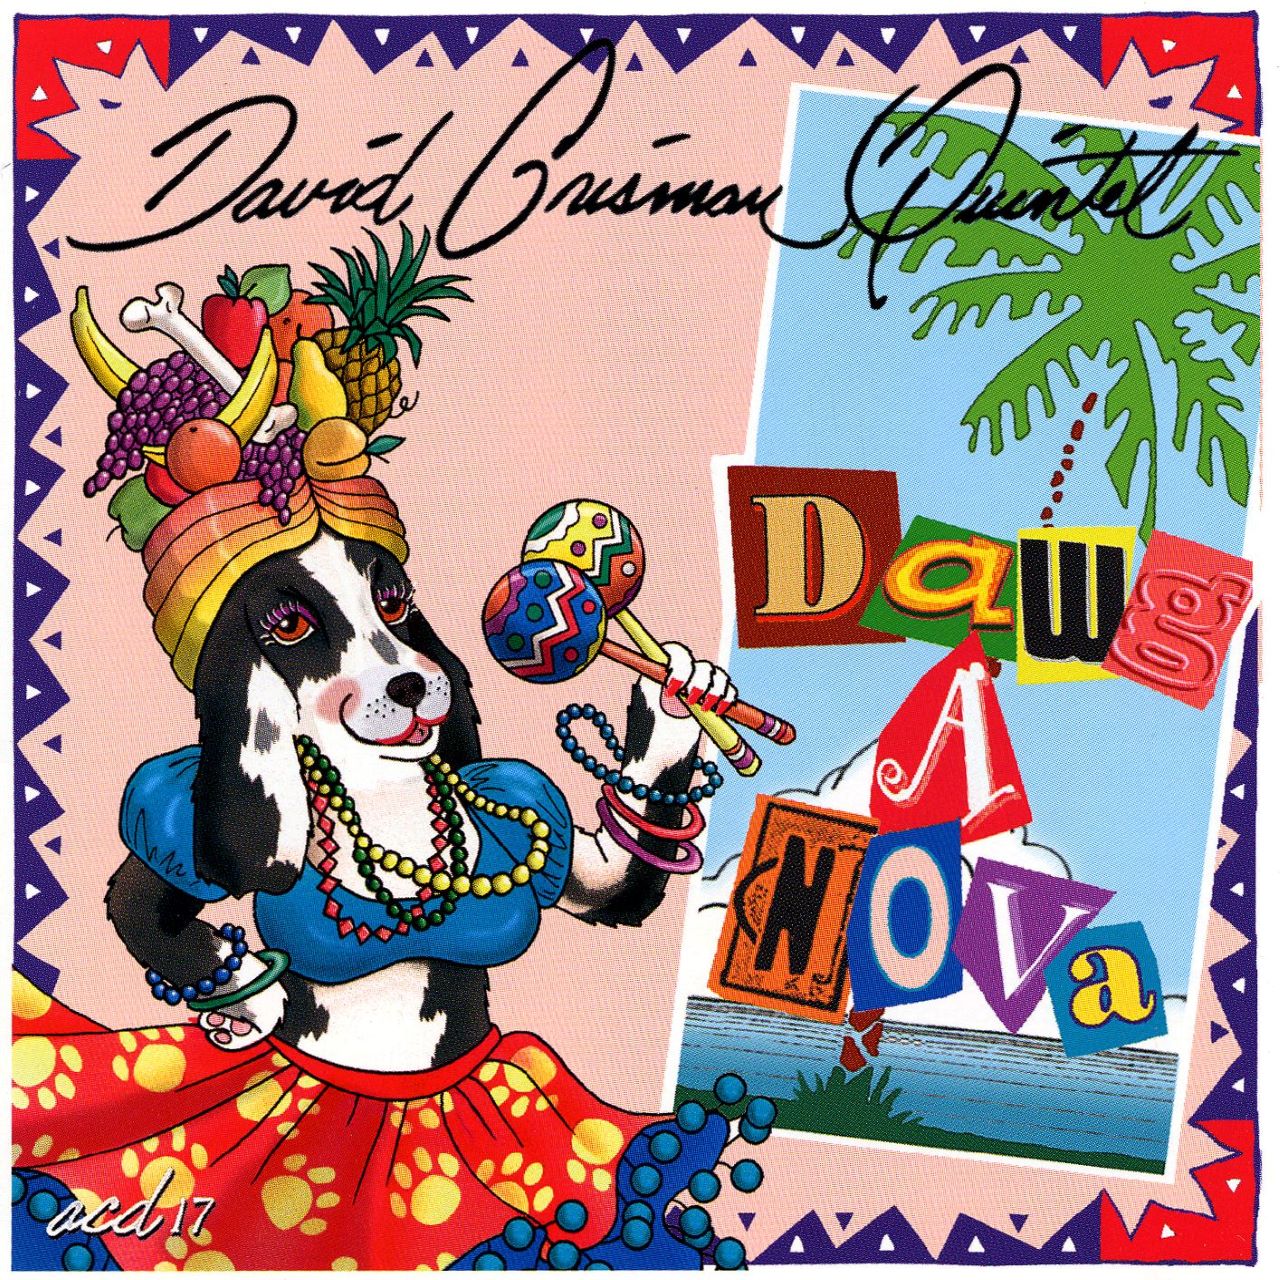 David Grisman Quintet - Dawganova cover album